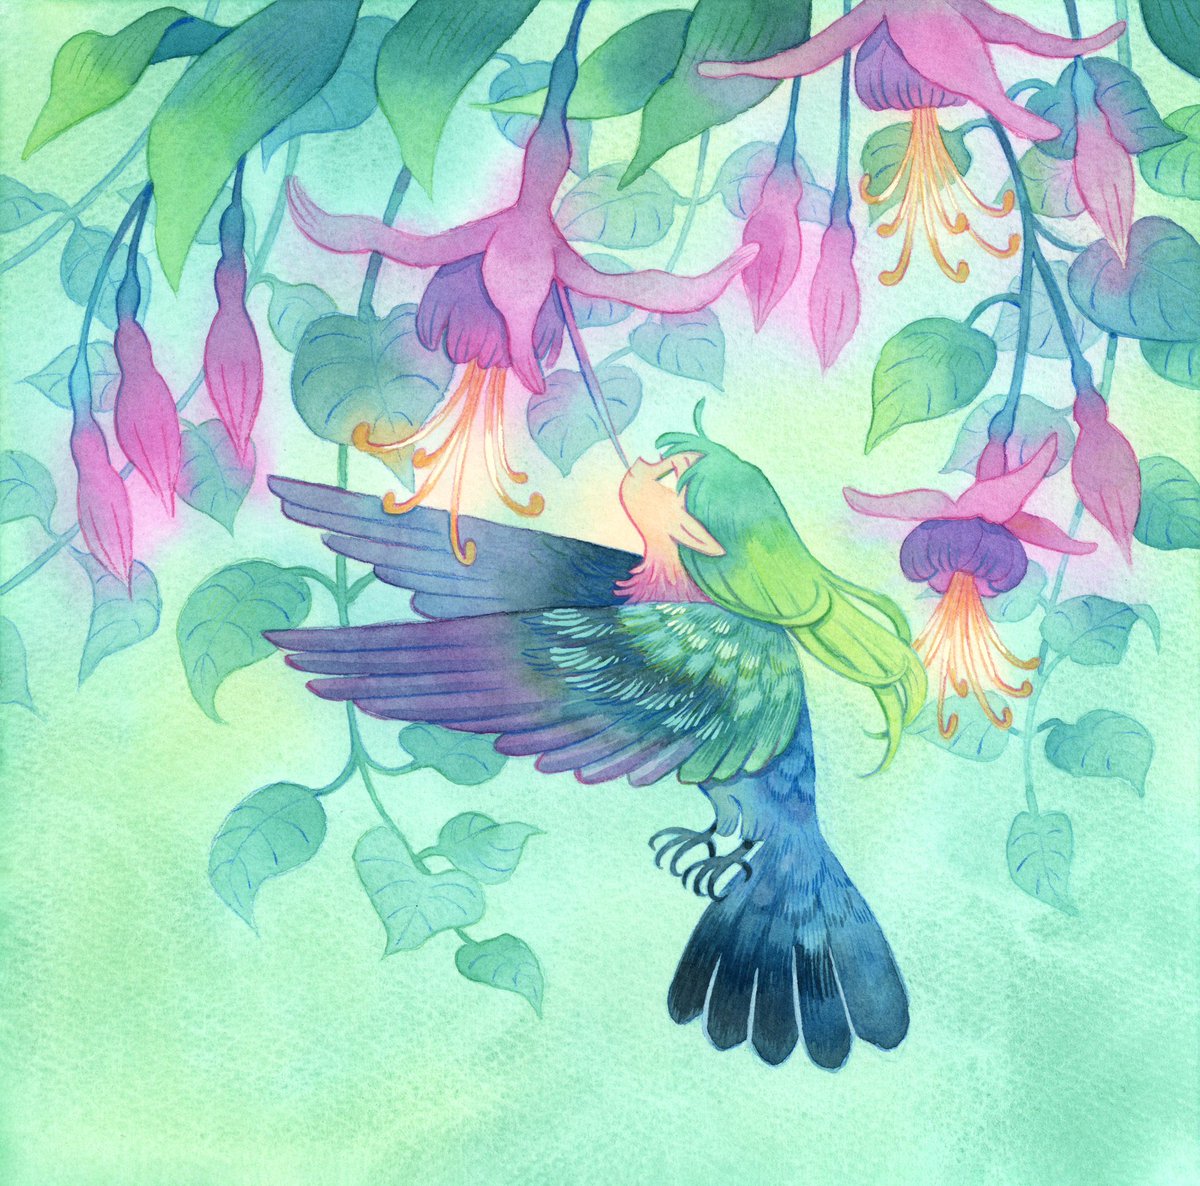 「Hummingbird」|Heikalaのイラスト